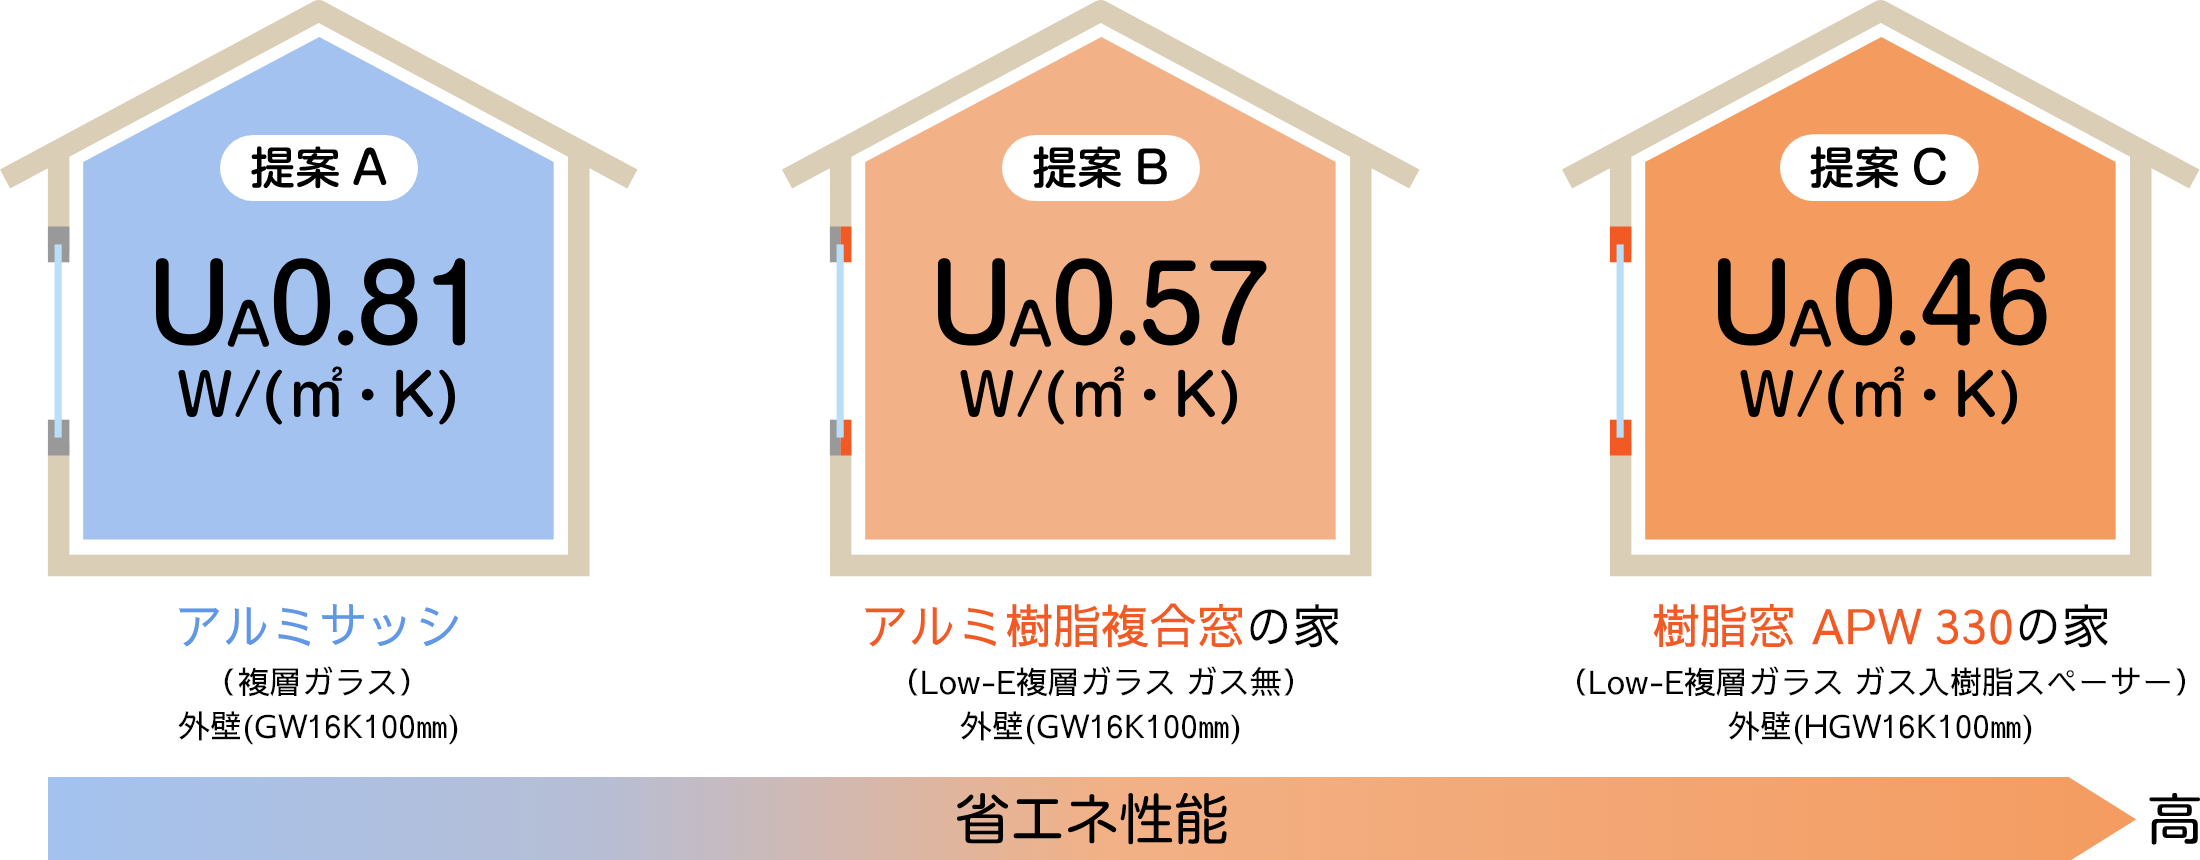 提案A：アルミサッシ（UA0.81W/㎡・K）　提案B：アルミ樹脂複合窓の家（UA0.57W/㎡・K）　提案C：樹脂窓 APW 330の家（UA0.46W/㎡・K）　※順に省エネ性能が高い